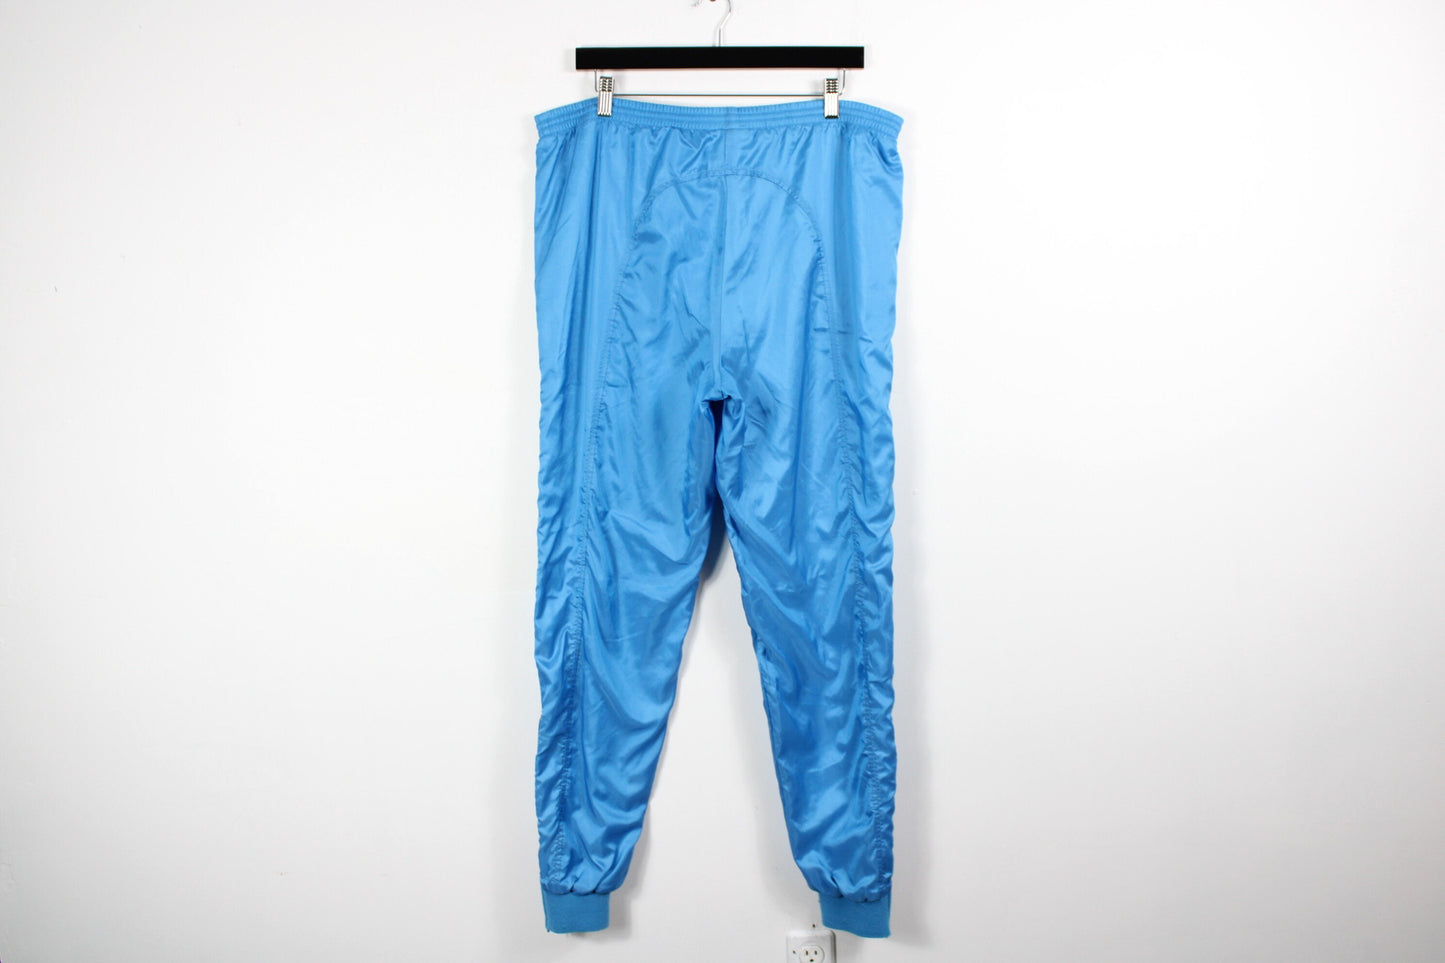 Nike-InternationalTrack-Suit / Air Jordan Sweat-Suit / Vintage Jacket And Pants / Wind-Breaker / 90s / y2k Hip Hop Clothing / Streetwear